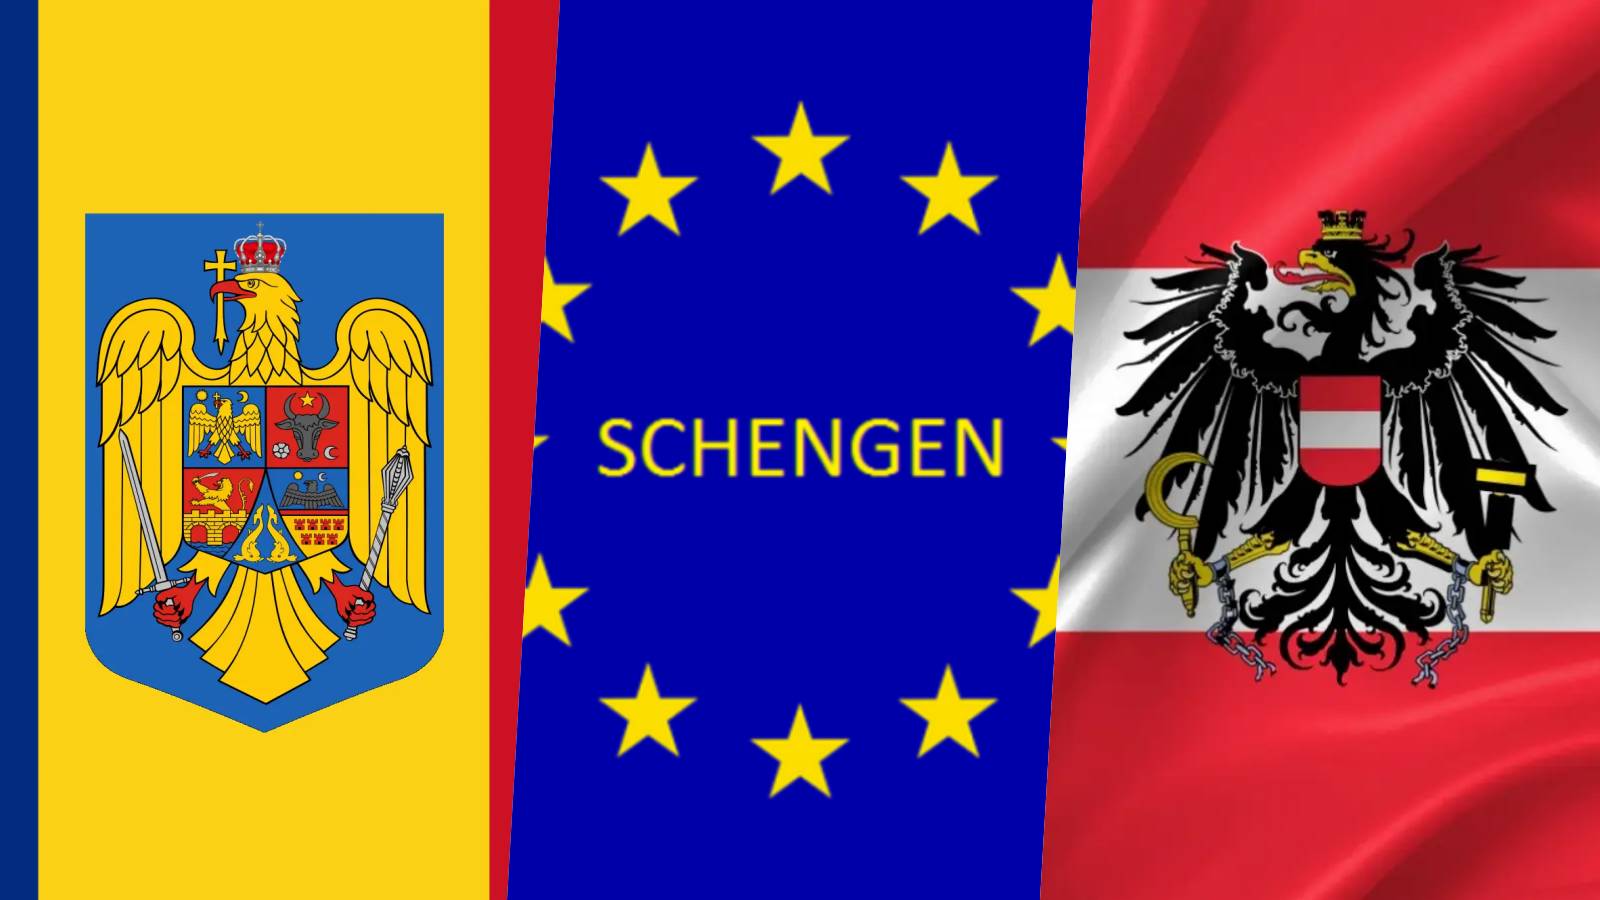 Austria Karner Notizie ufficiali ULTIMO MOMENTO quando la Romania accede a Schengen